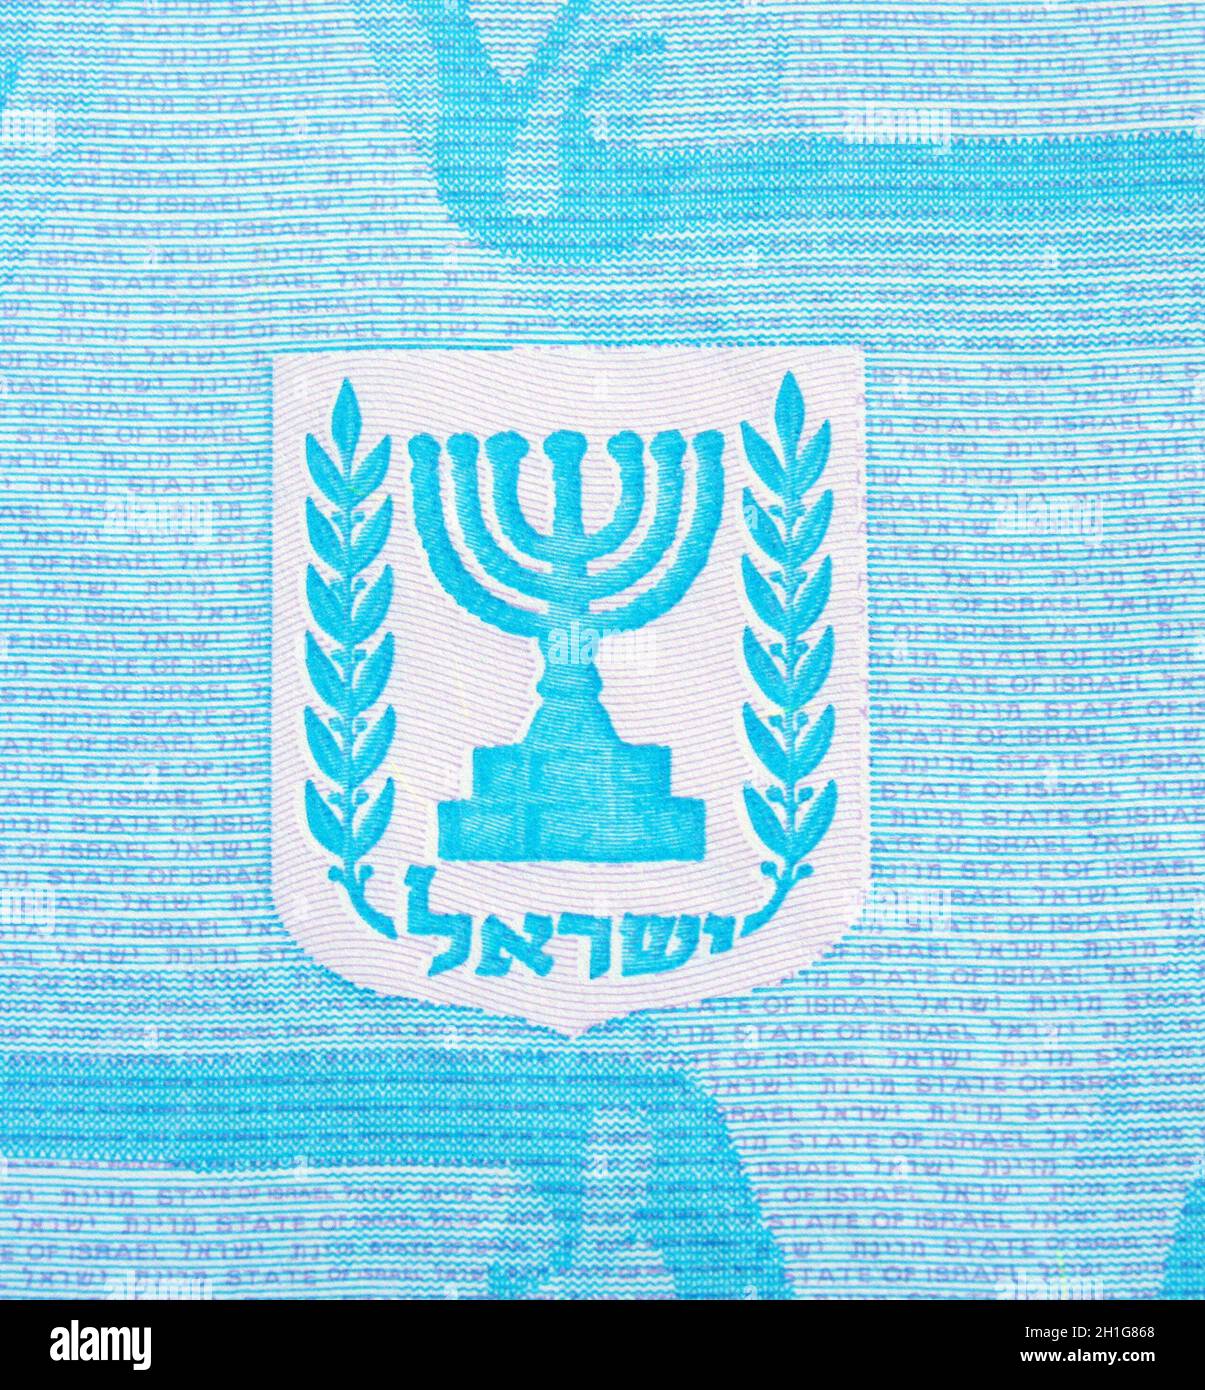 Menorah symbol on Israeli passport Stock Photo